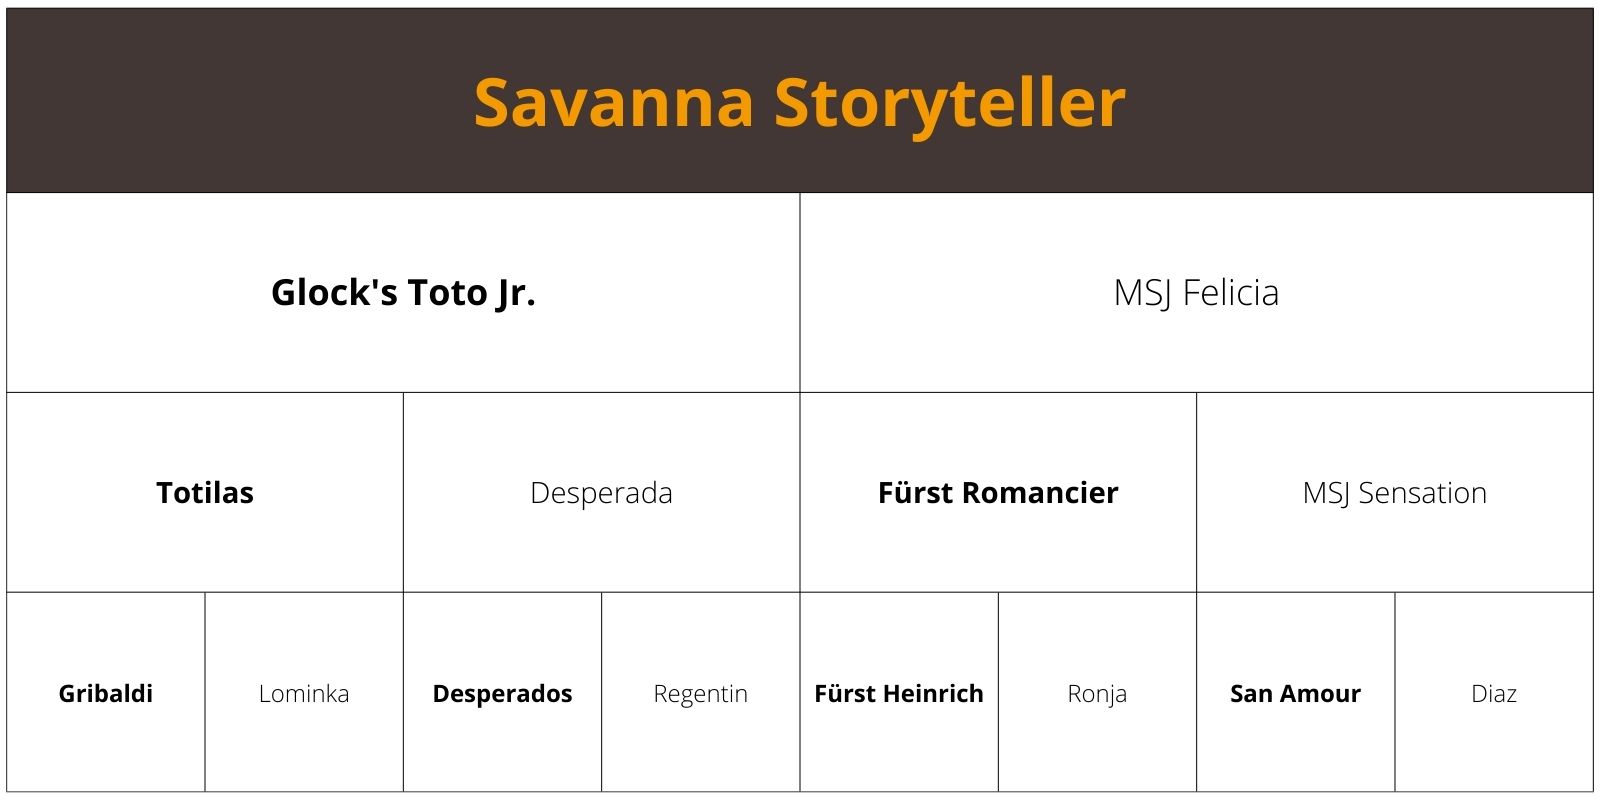 Savanna Storyteller